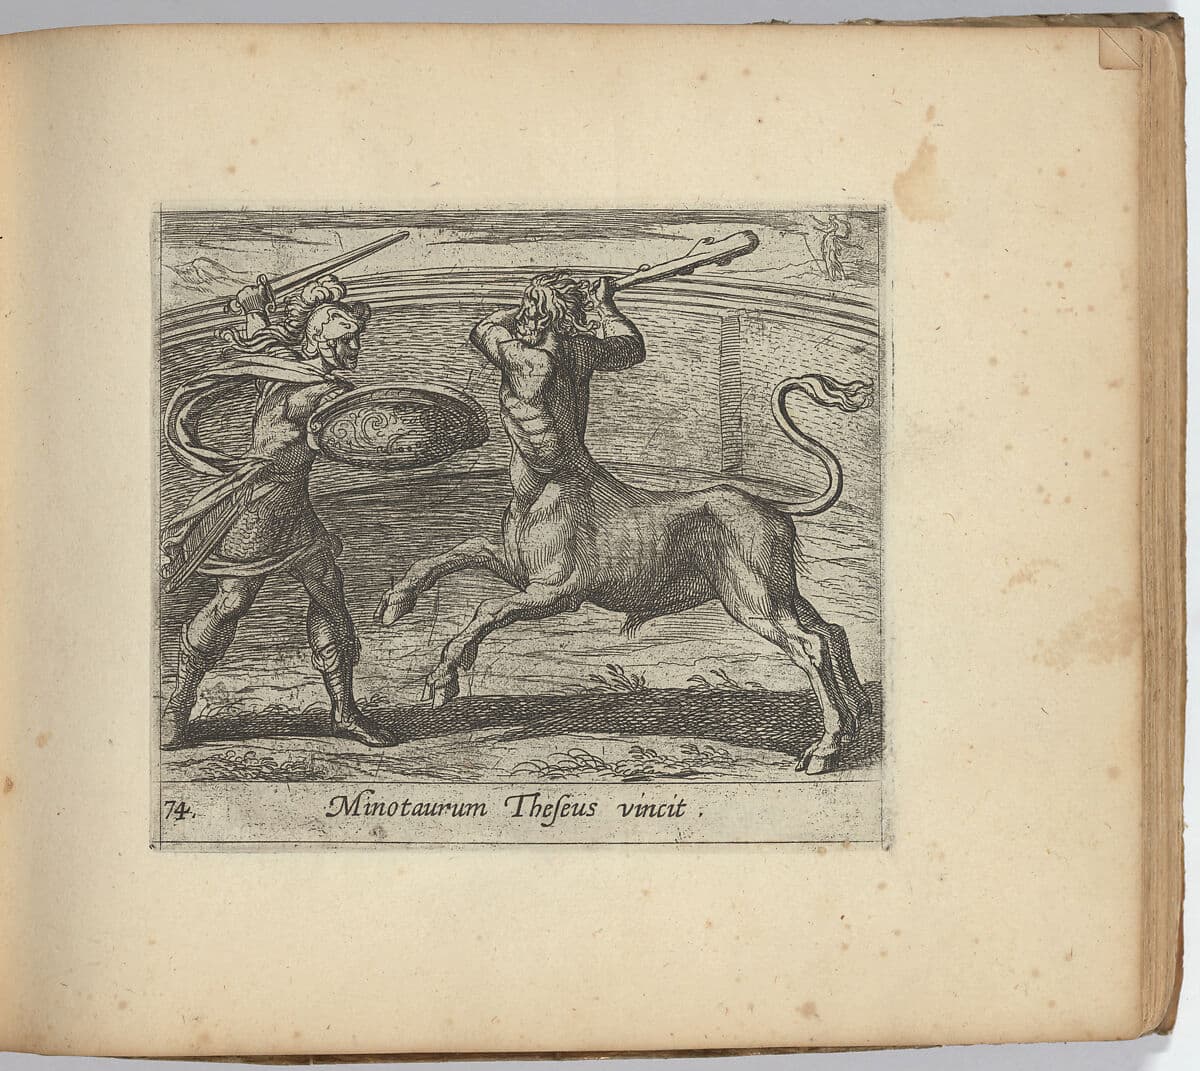 Antonio Tempesta: Theseus and the Minotaur (Minotaurum Theseus vincit), from The Metamorphoses of Ovid, 1606 (Metropolitan Museum)